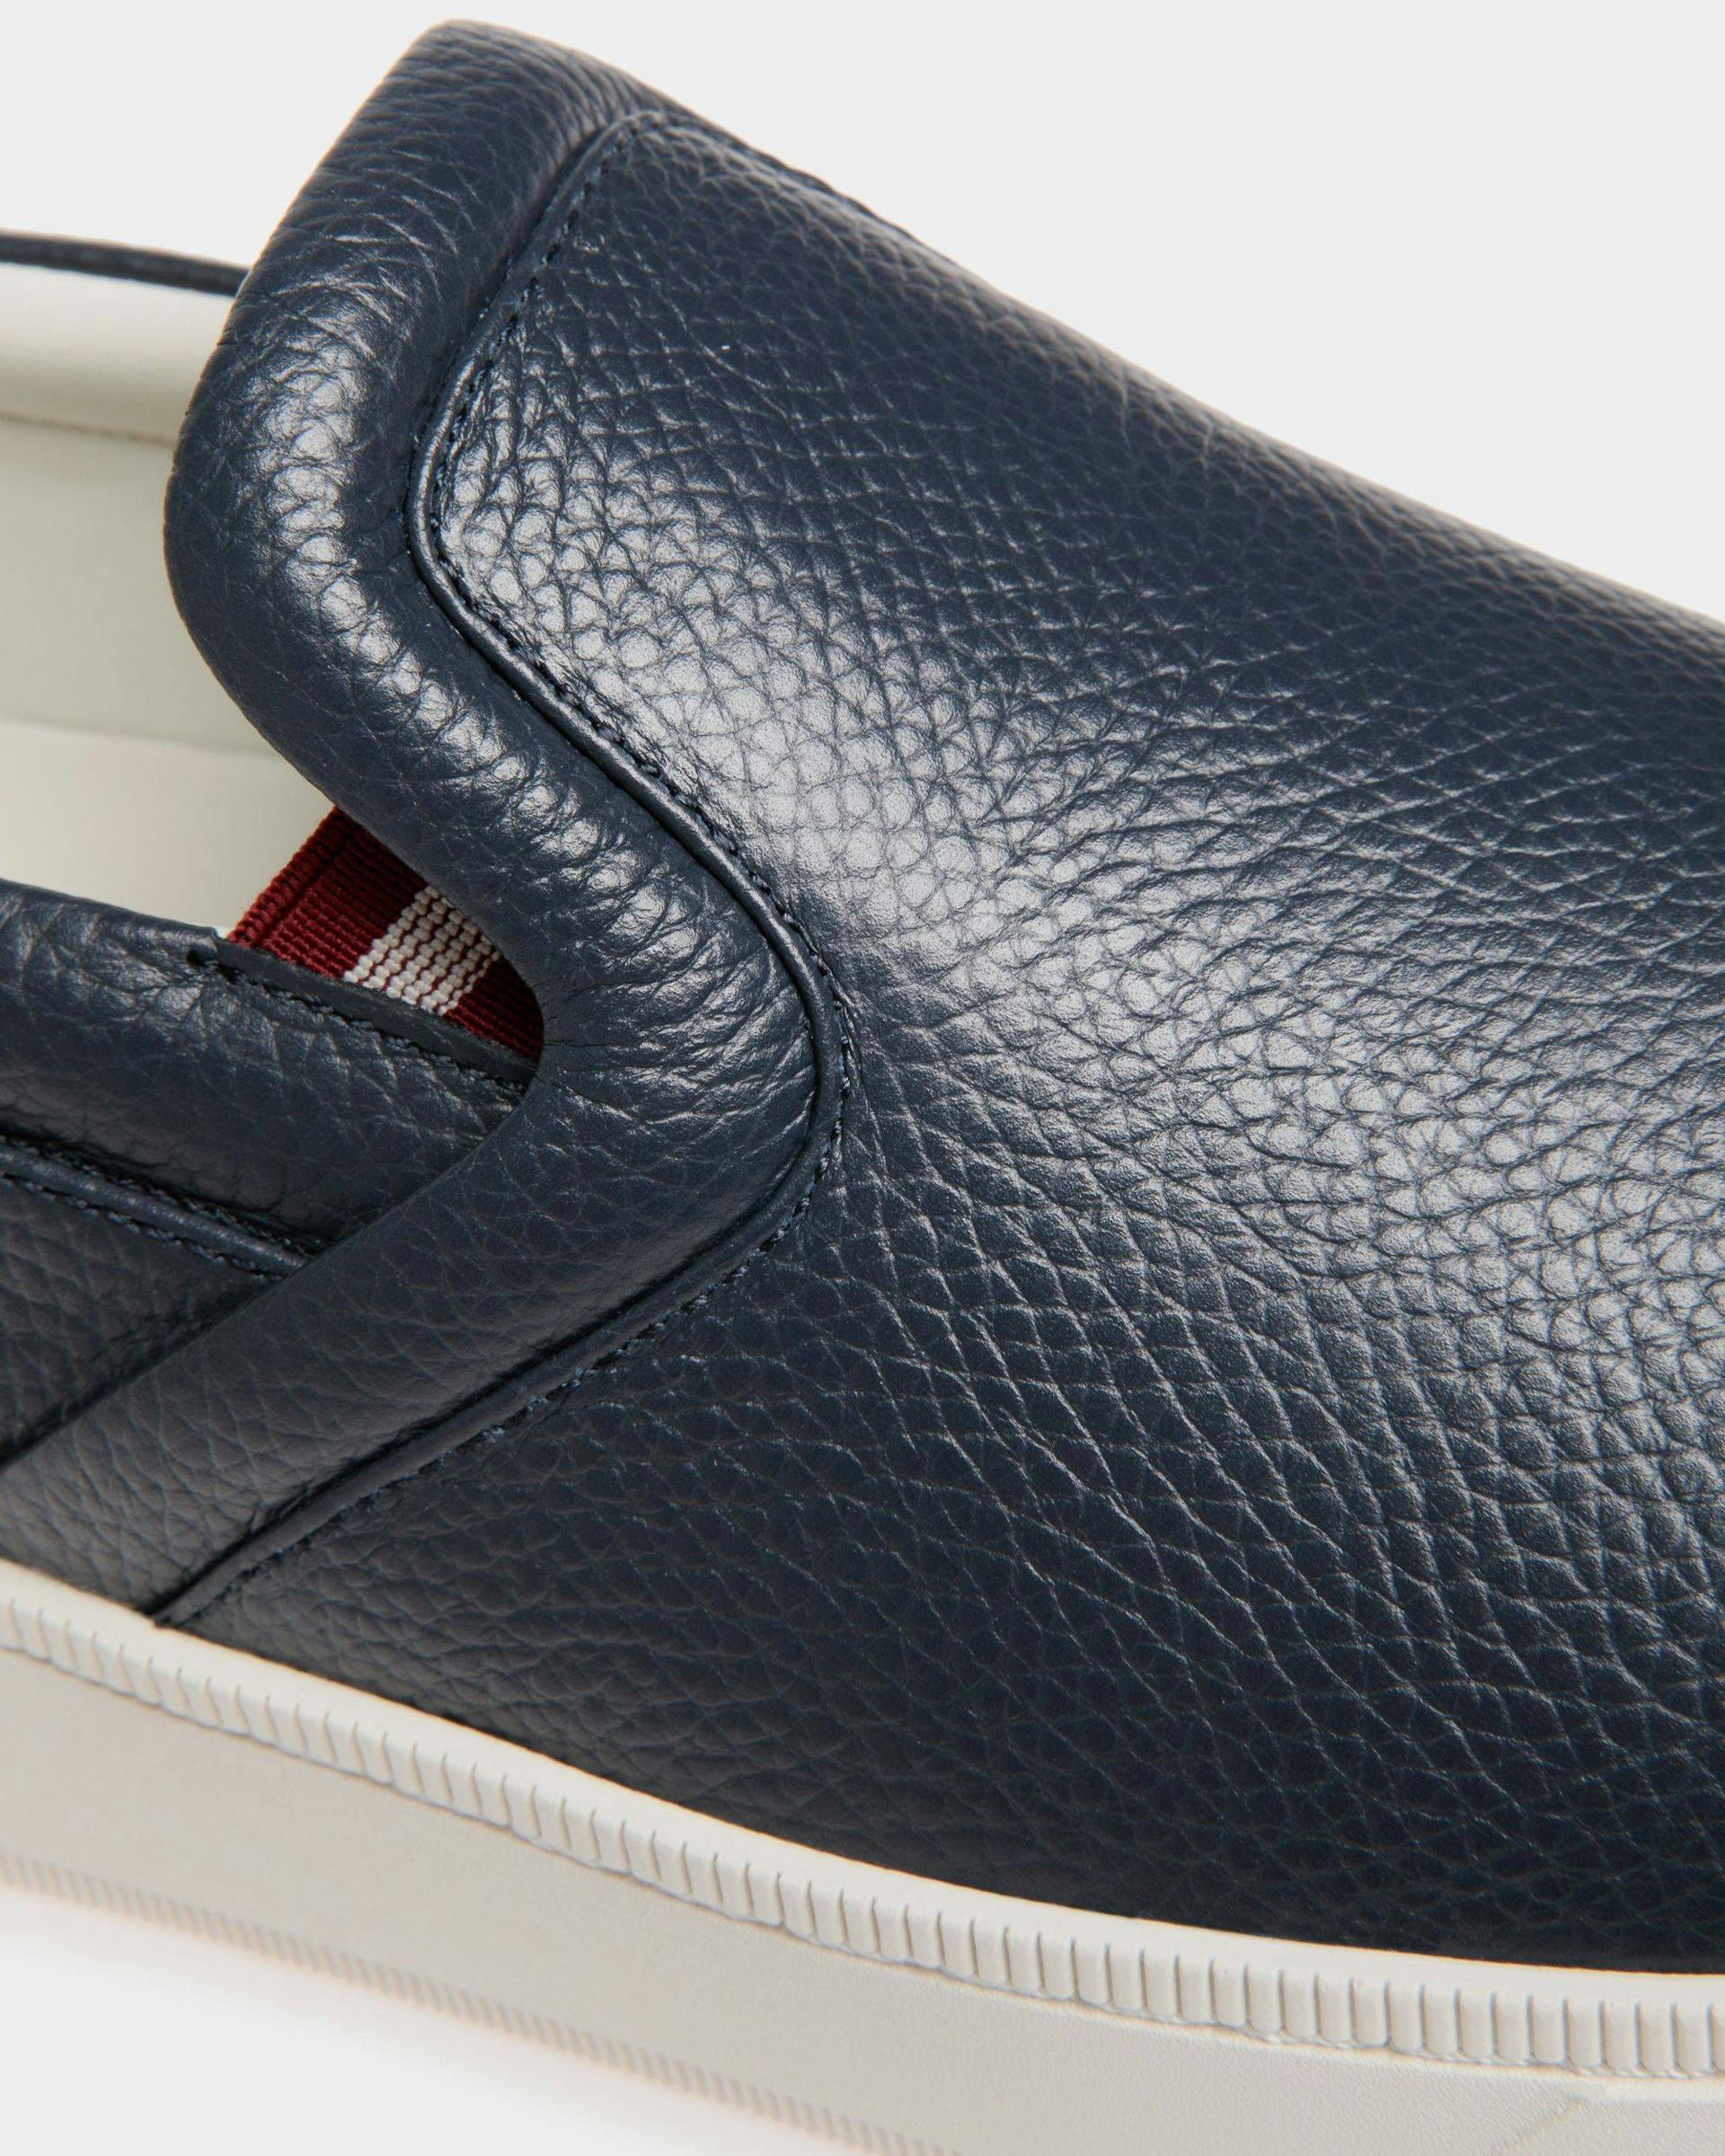 Men's Raise Slip-On Sneaker In Blue Grained Leather | Bally | Still Life Detail